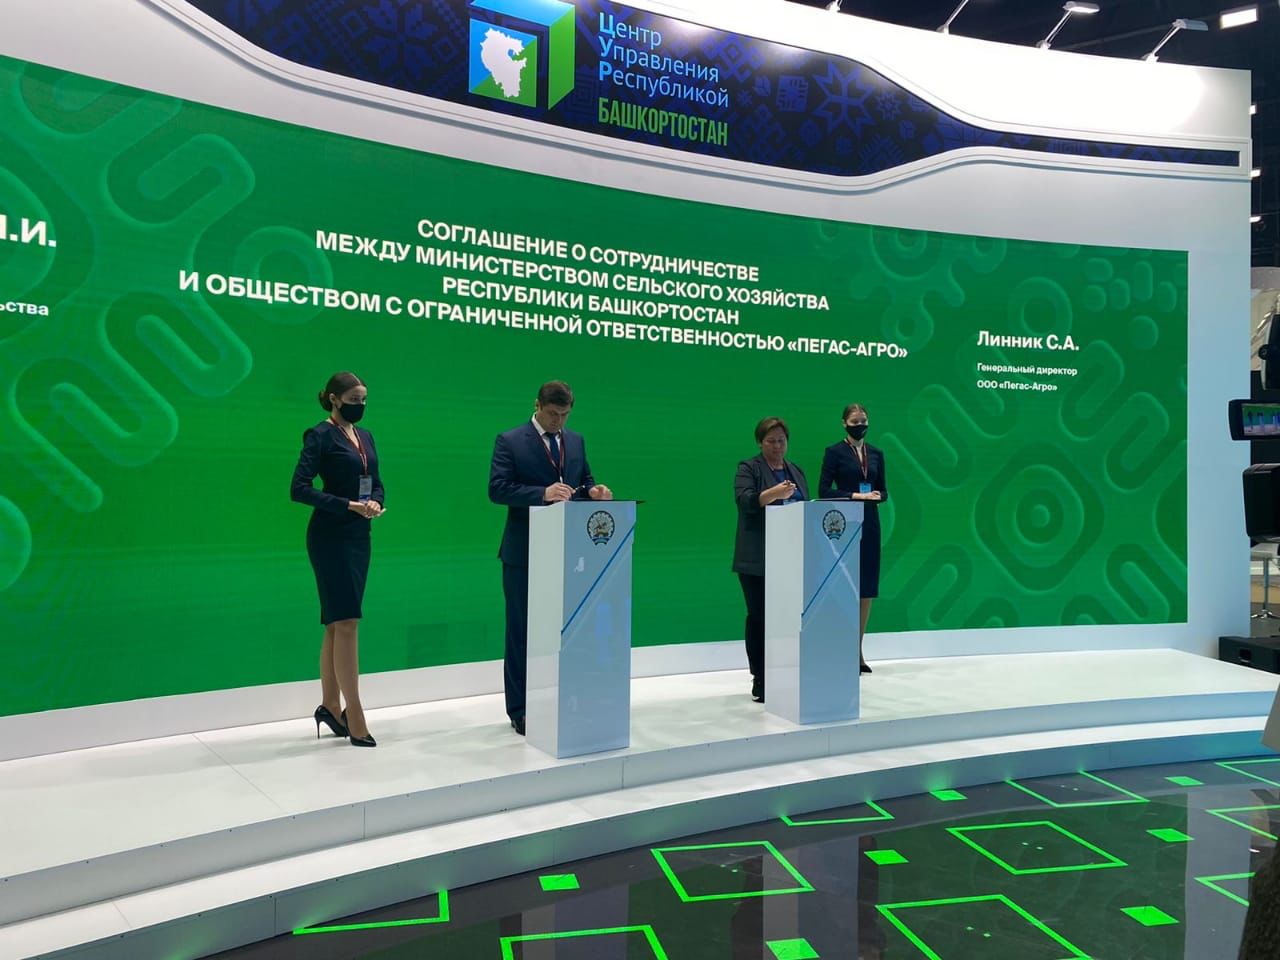 Подписано соглашение о сотрудничестве между Министерством сельского хозяйства Республики Башкортостан и заводом Пегас-Агро